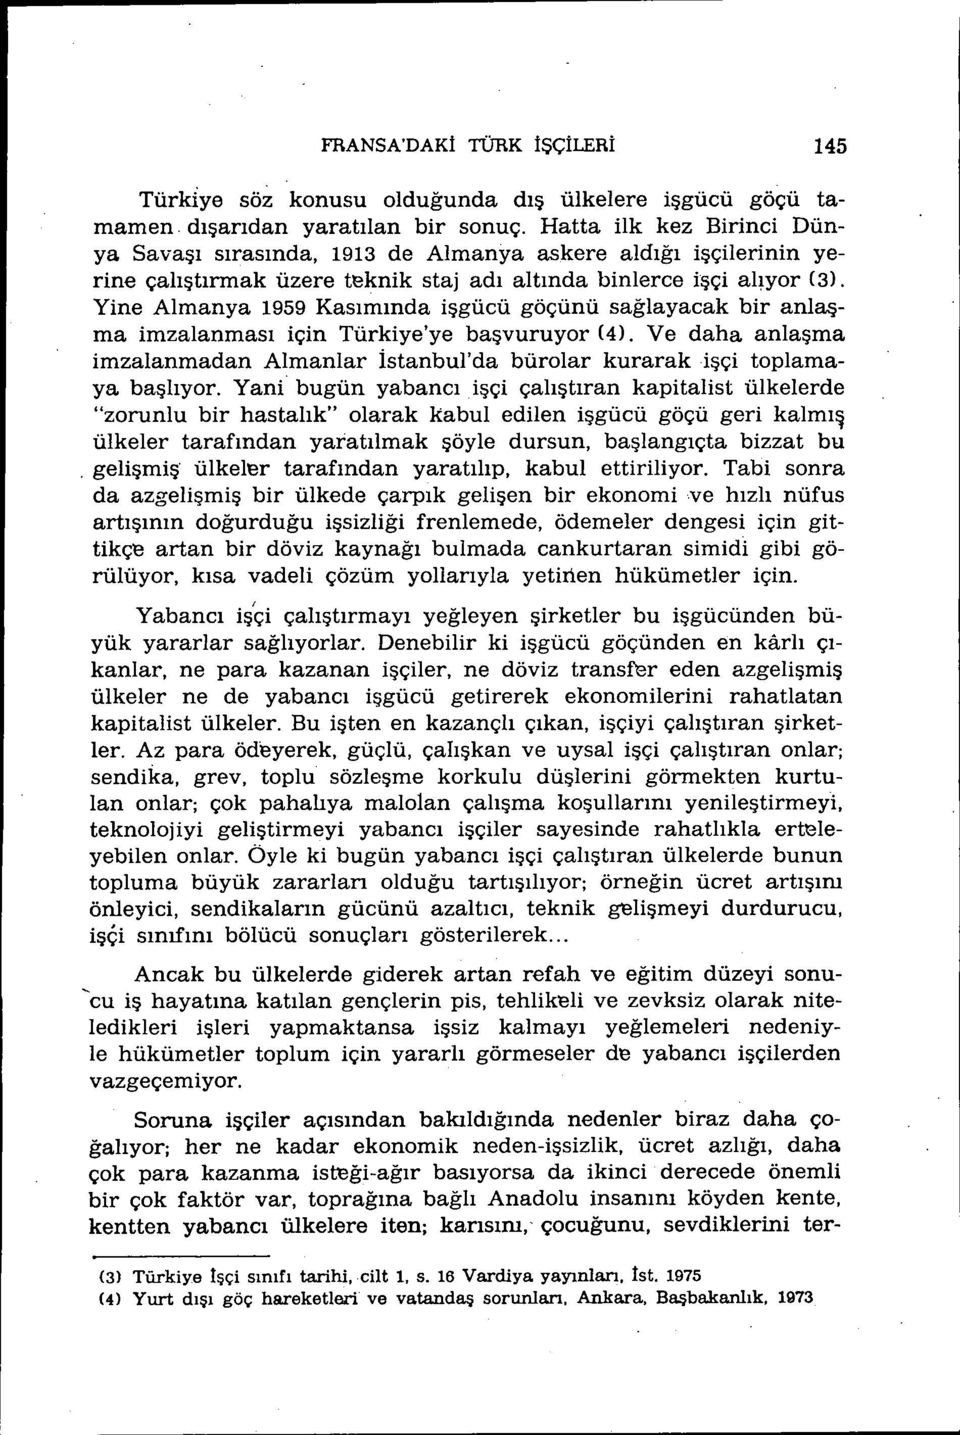 Yine Almanya 1959 Kasımında işgücü göçünü sağlayacak bir anlaşma imzalanması için Türkiye'ye başvuruyor (4)' Ve daha anlaşma imzalanmadan Almanlar İstanbul'da bürolar kurarak işçi toplamaya başlıyor.